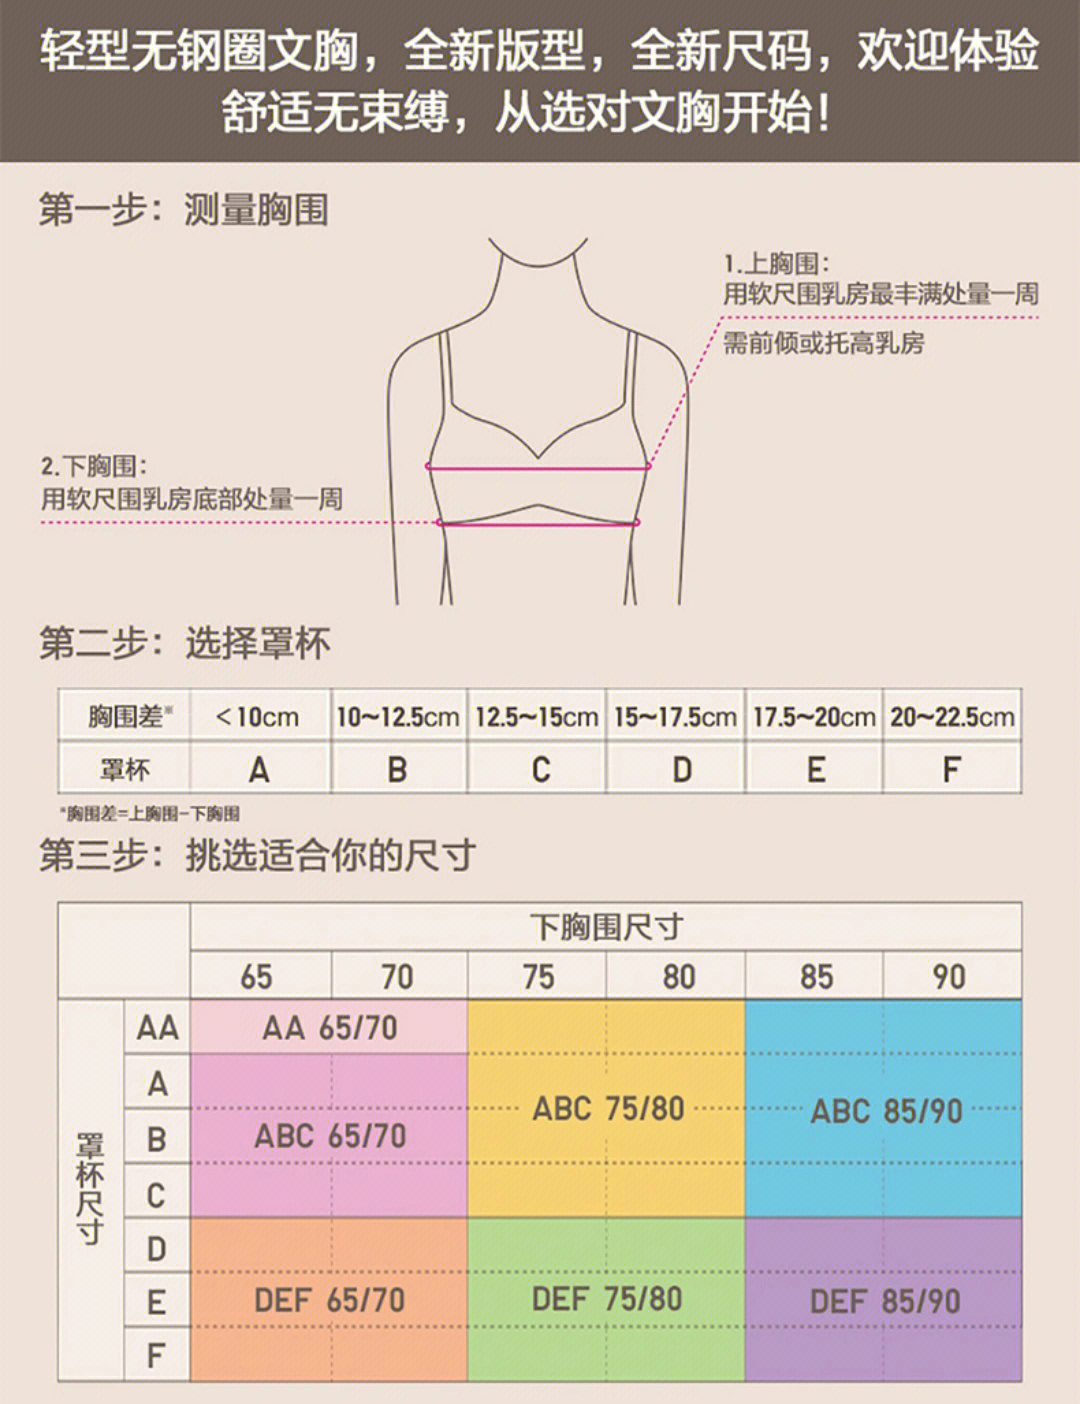 xl内衣尺码对照表图片